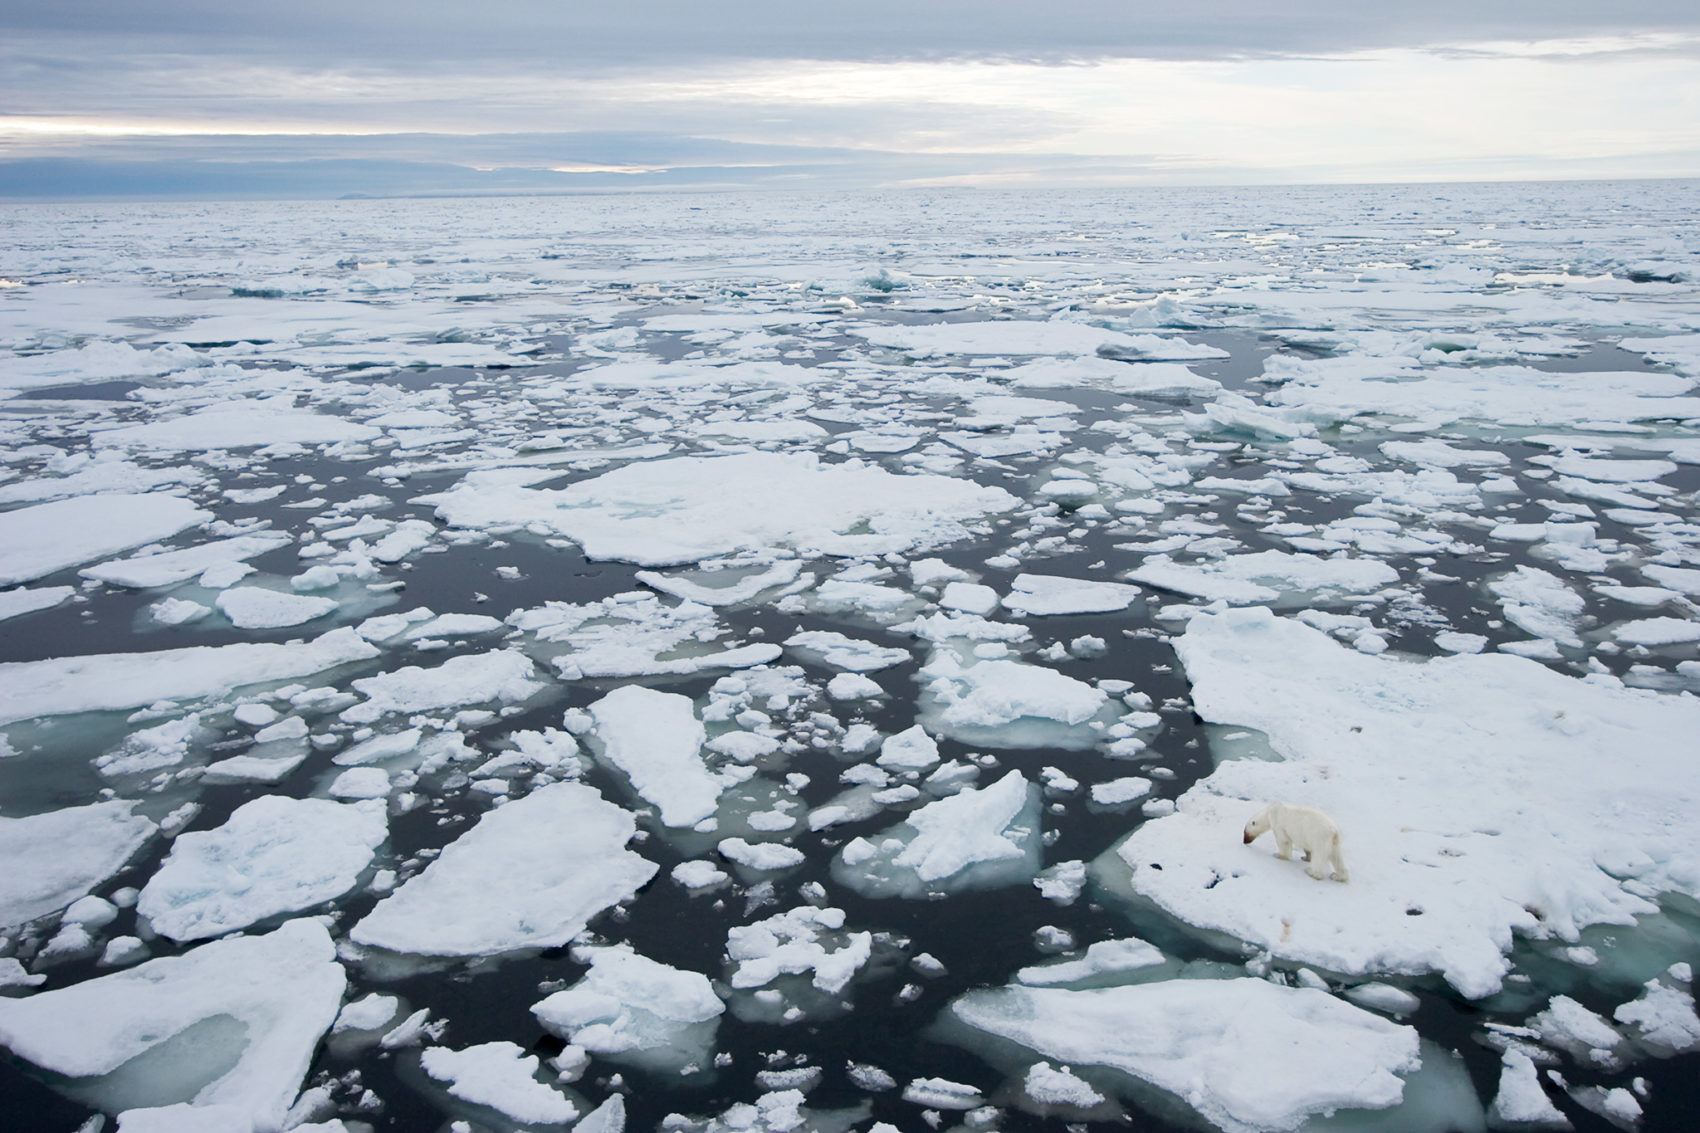 A polar bear on melting sea ice.